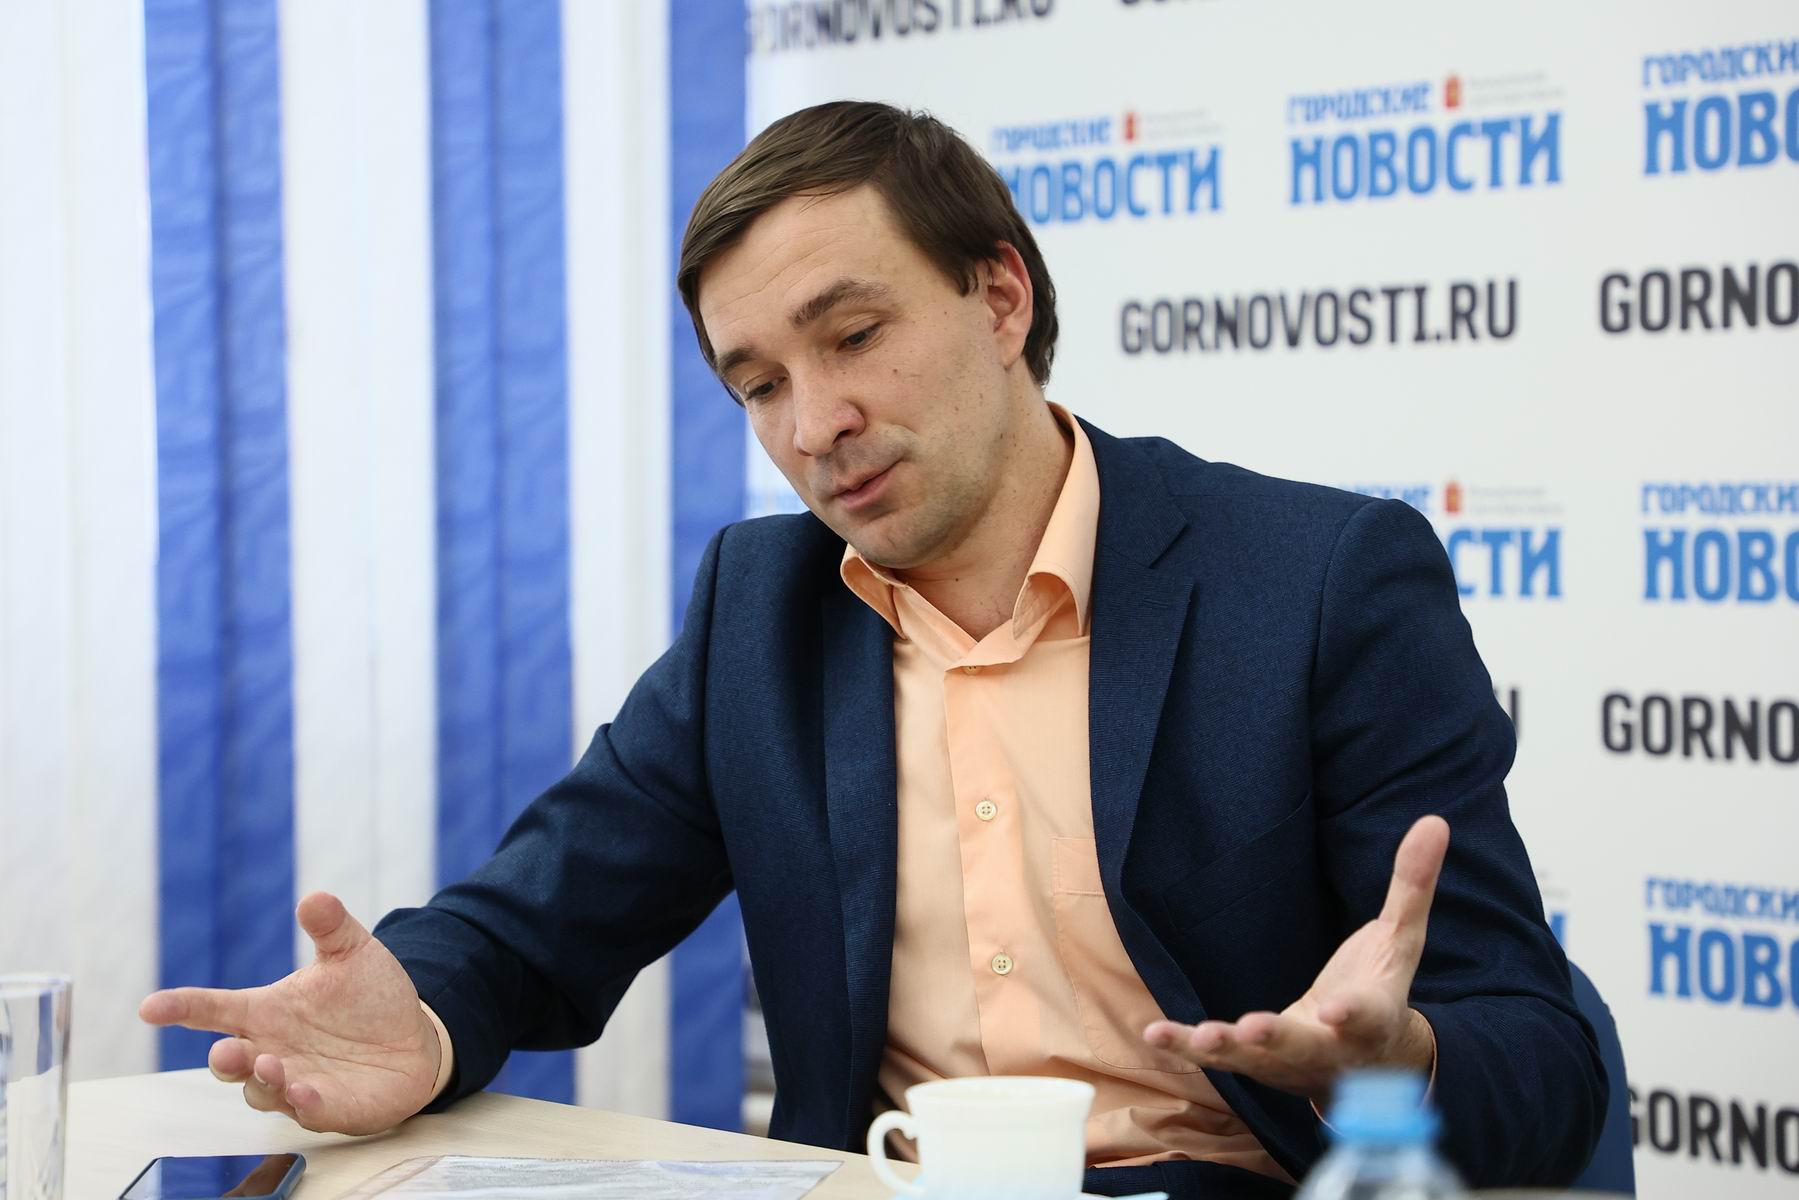 Гостем редакции «Городских новостей» стал новый министр спорта Красноярского края Денис Петровский. На своём посту он на